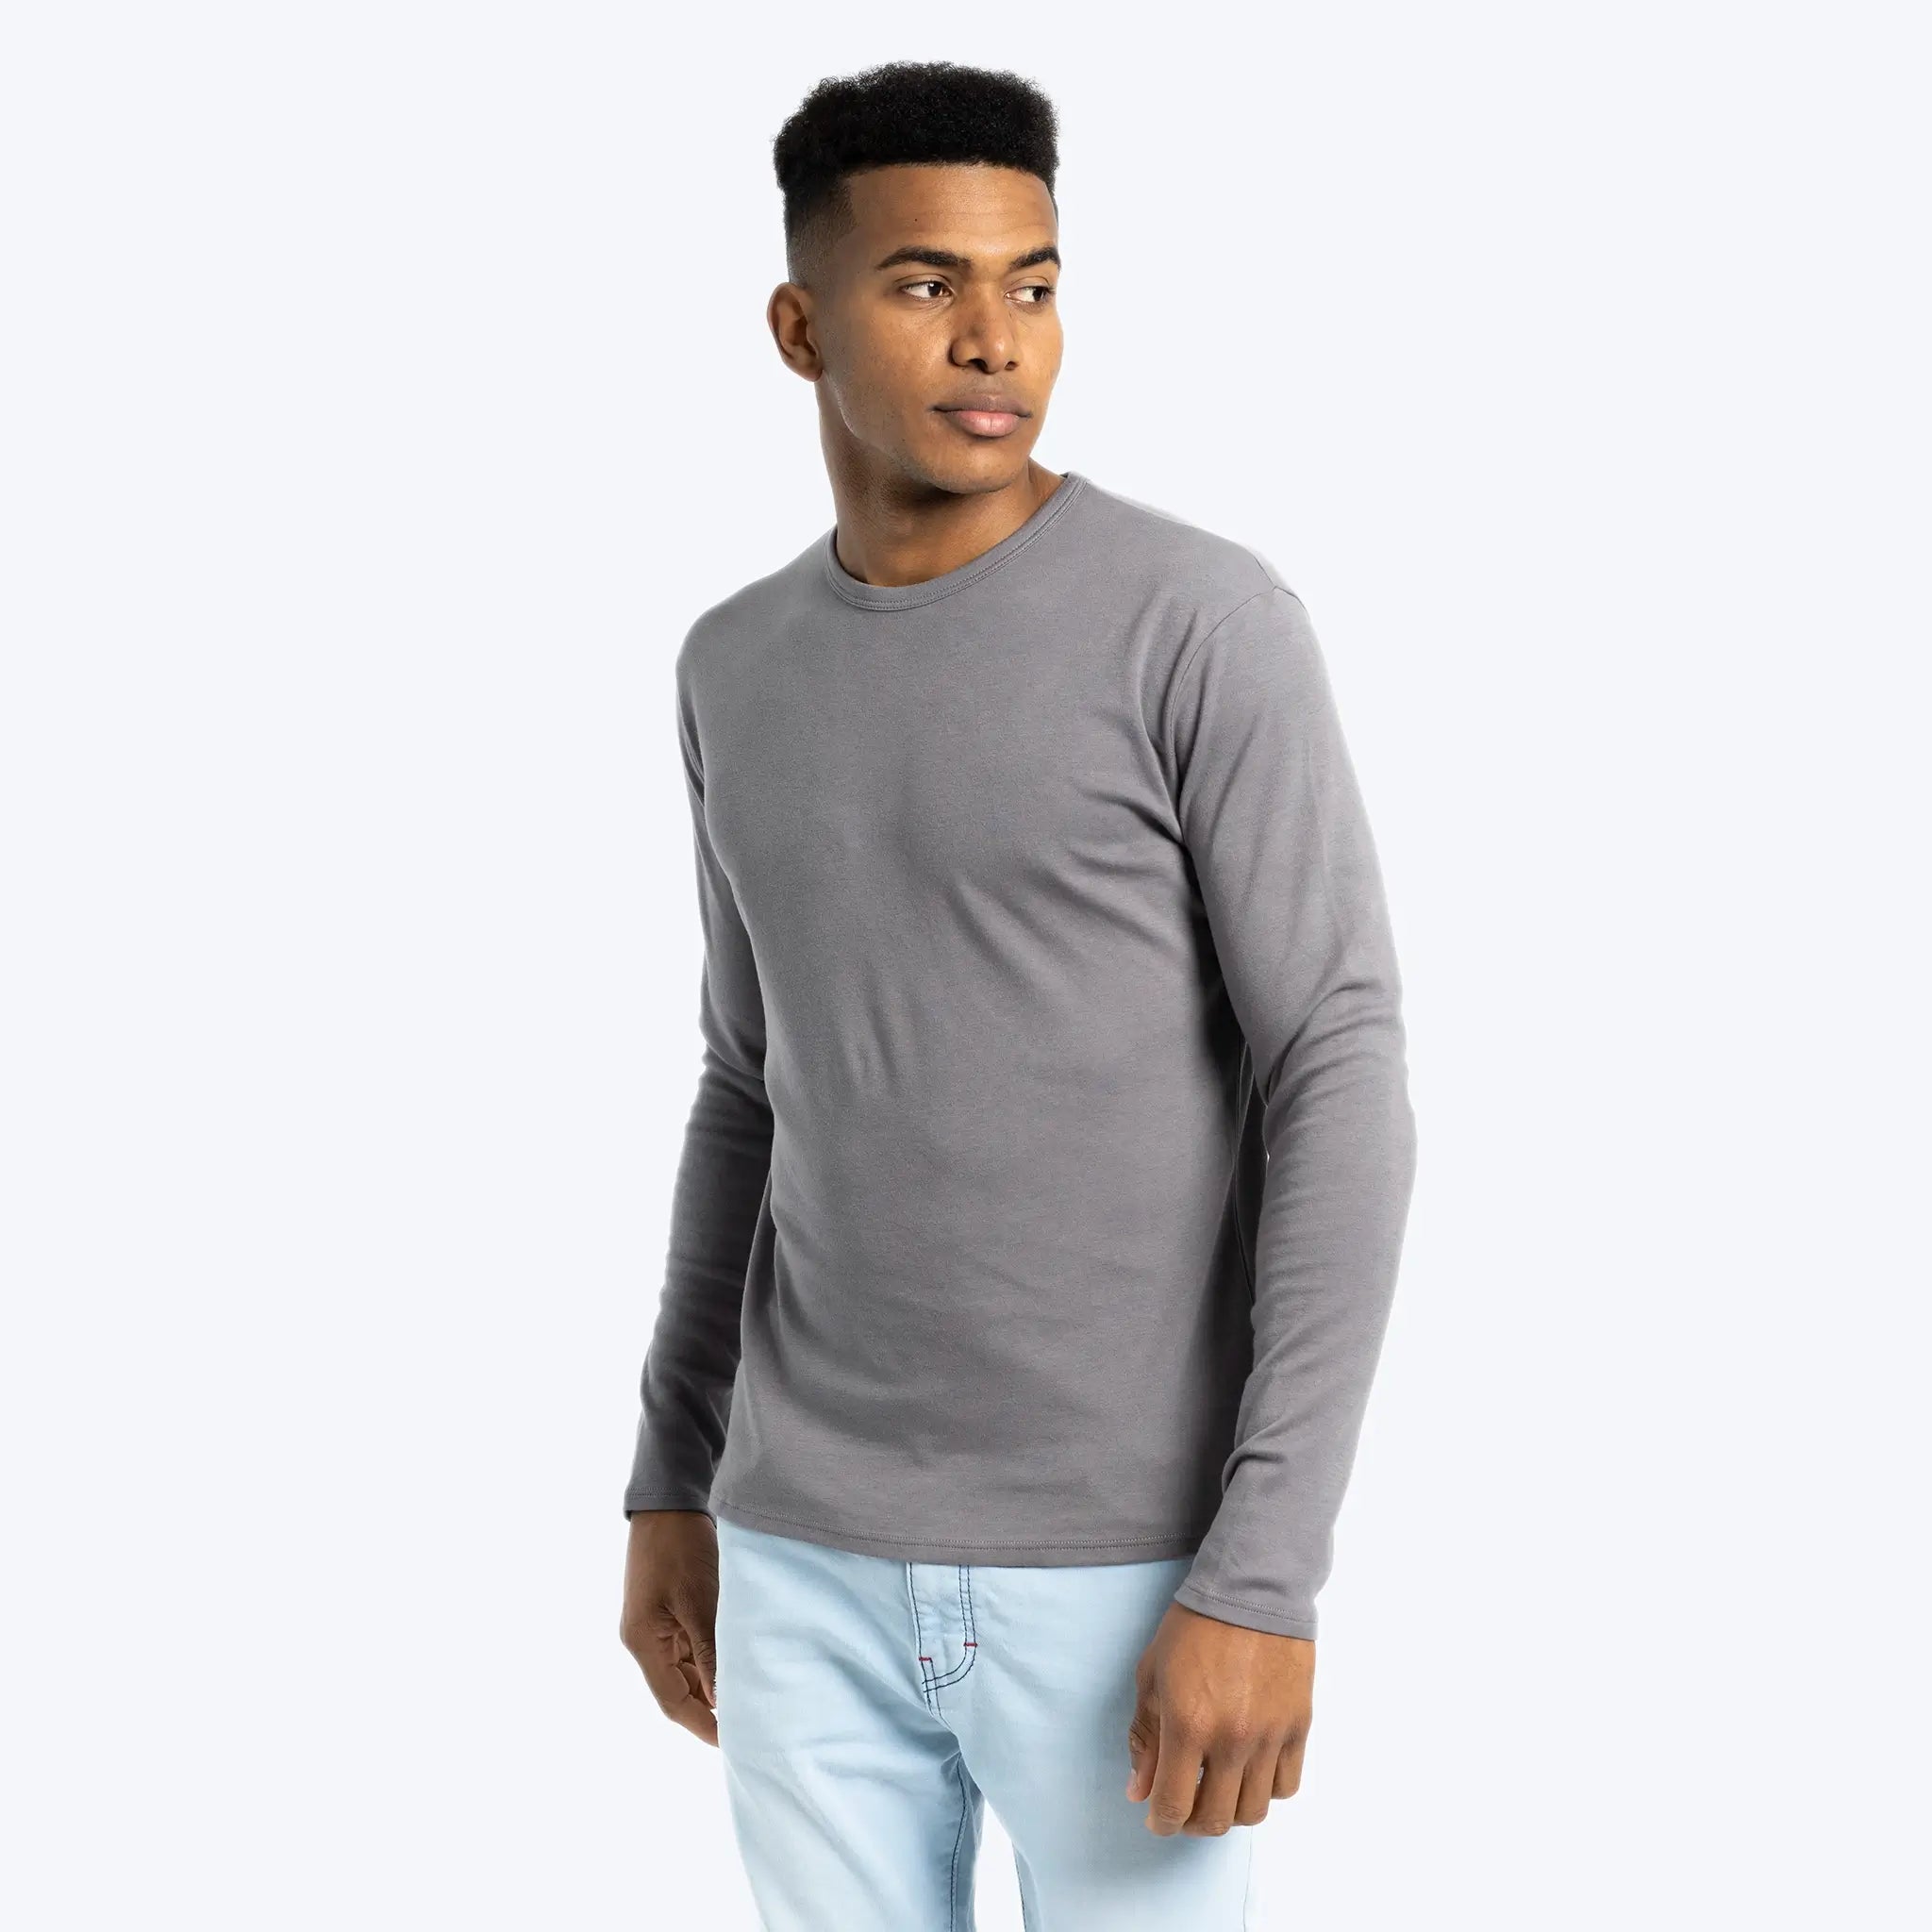 mens ultra soft tshirt long sleeve color natural gray